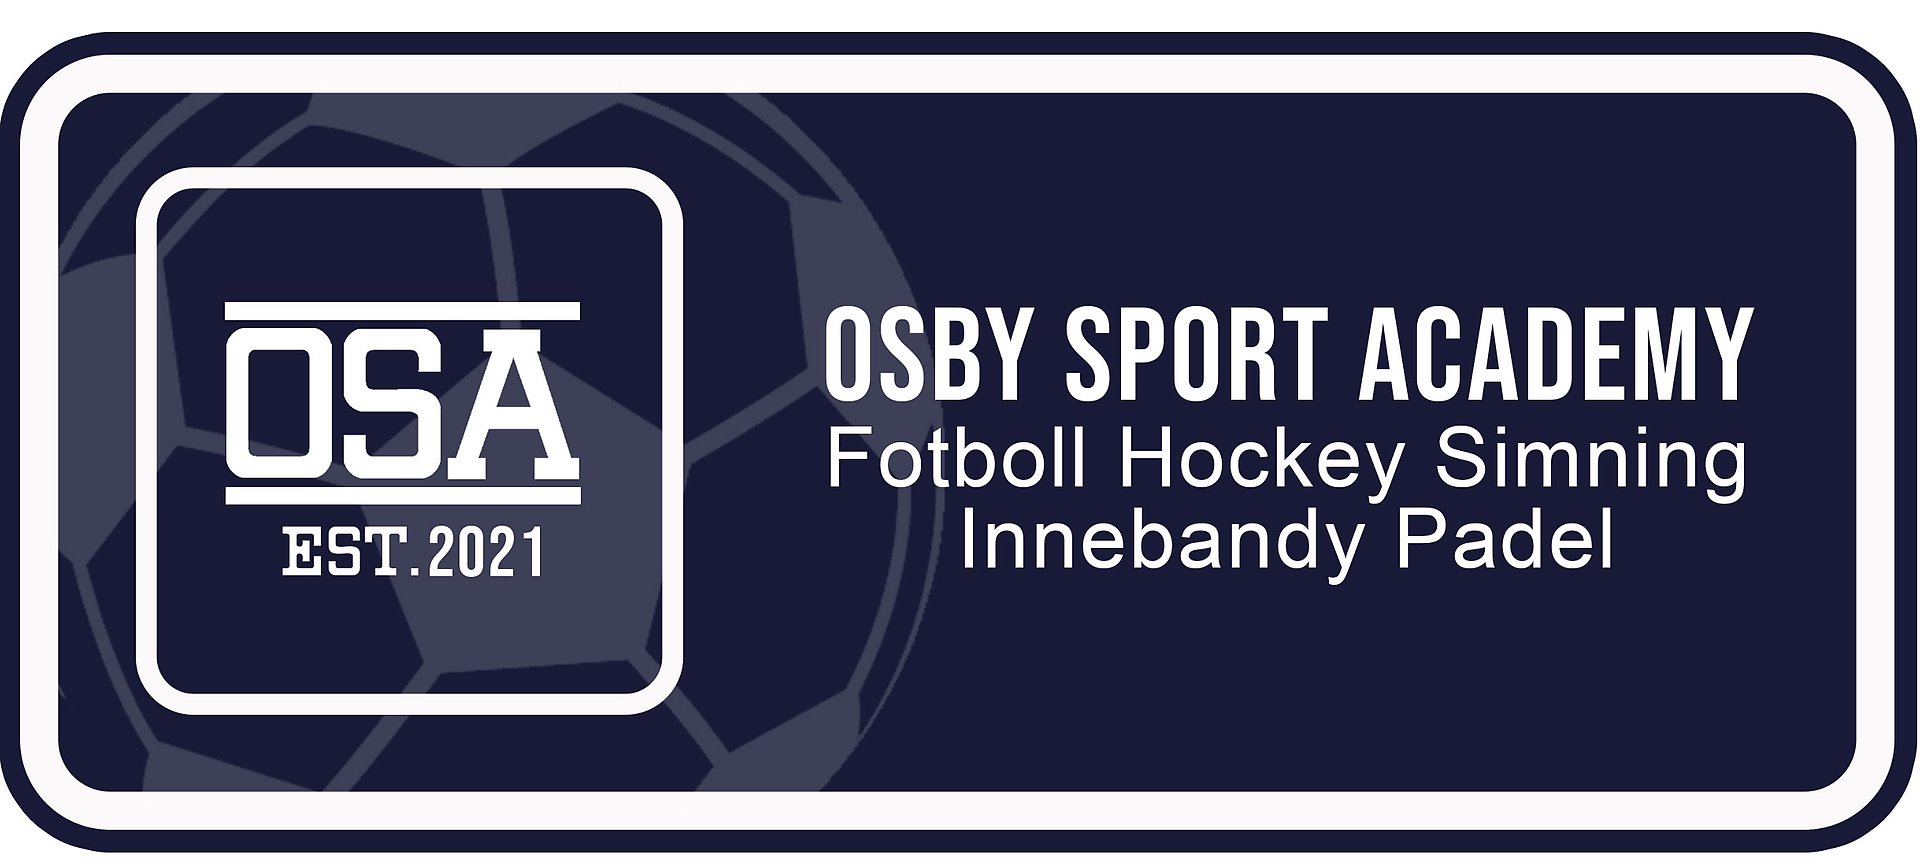 Osby Sport Academy